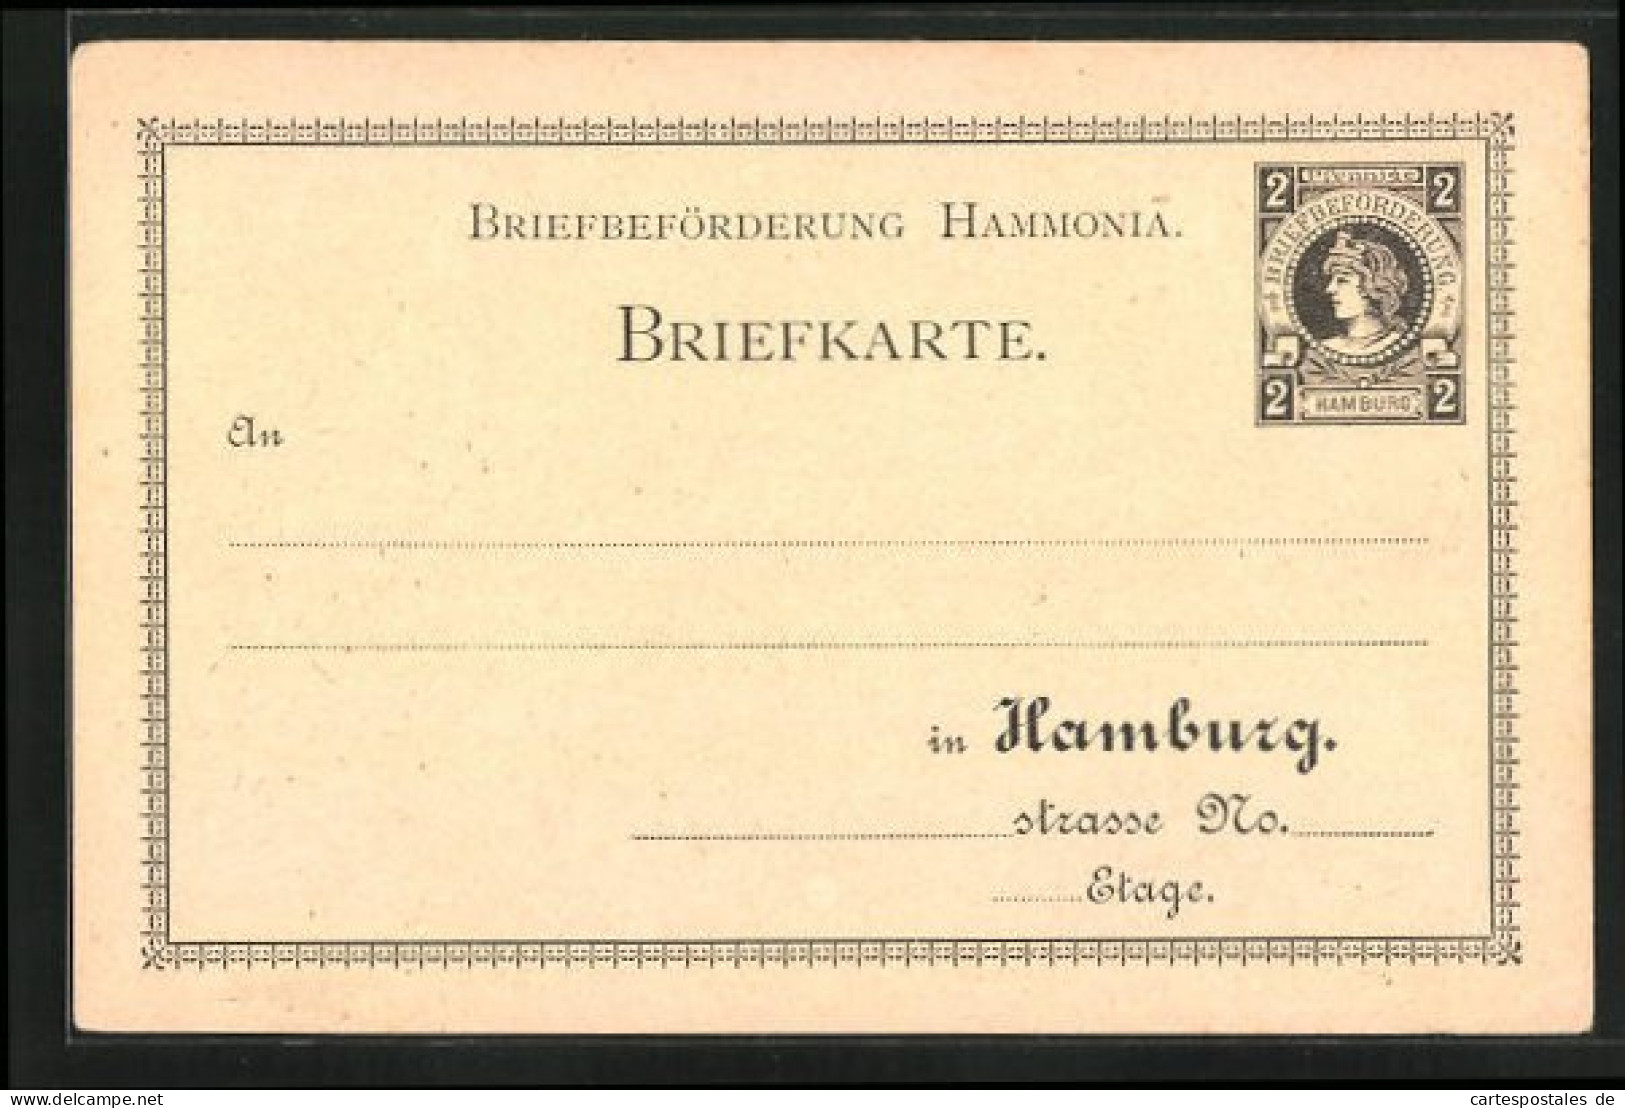 AK Briefkarte Private Stadtpost Hamburg, Briefbeförderung Hammonia, 2 Pfg.  - Briefmarken (Abbildungen)